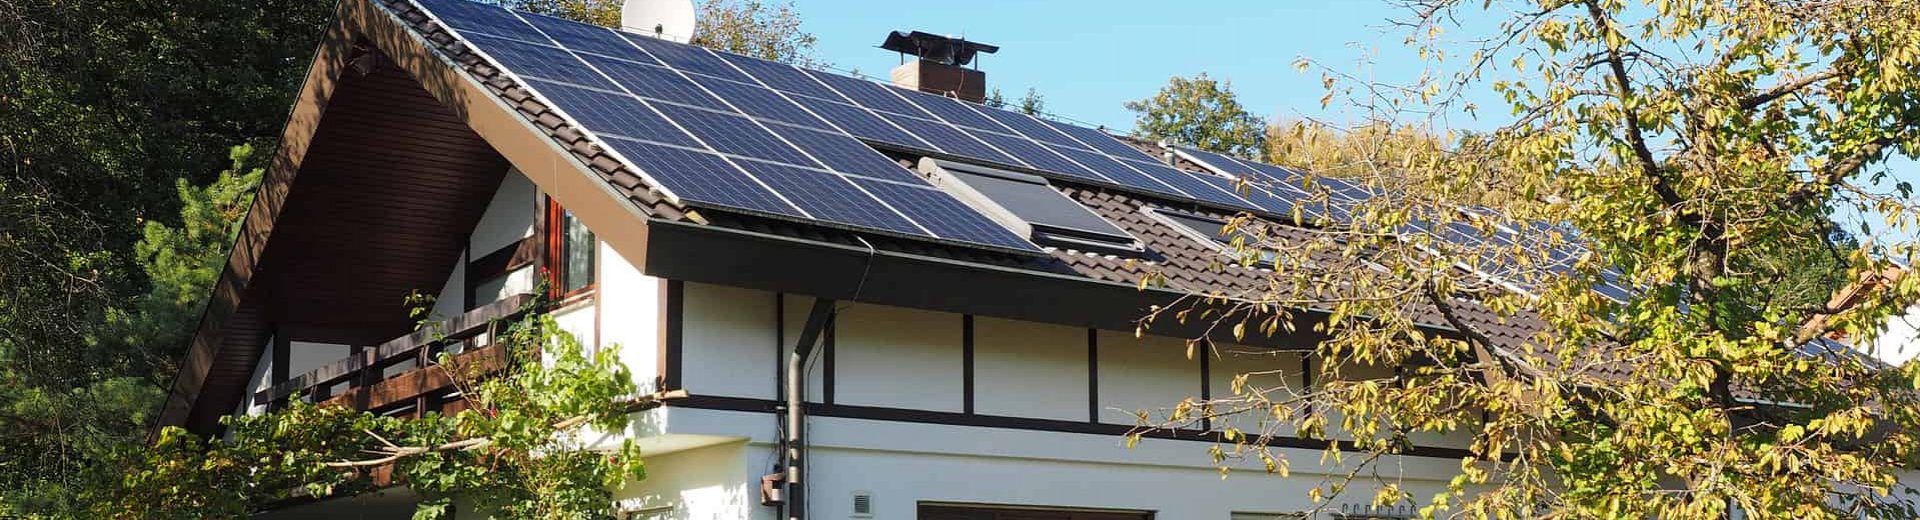 Solaranlage auf Dach eines Einfamilienhauses